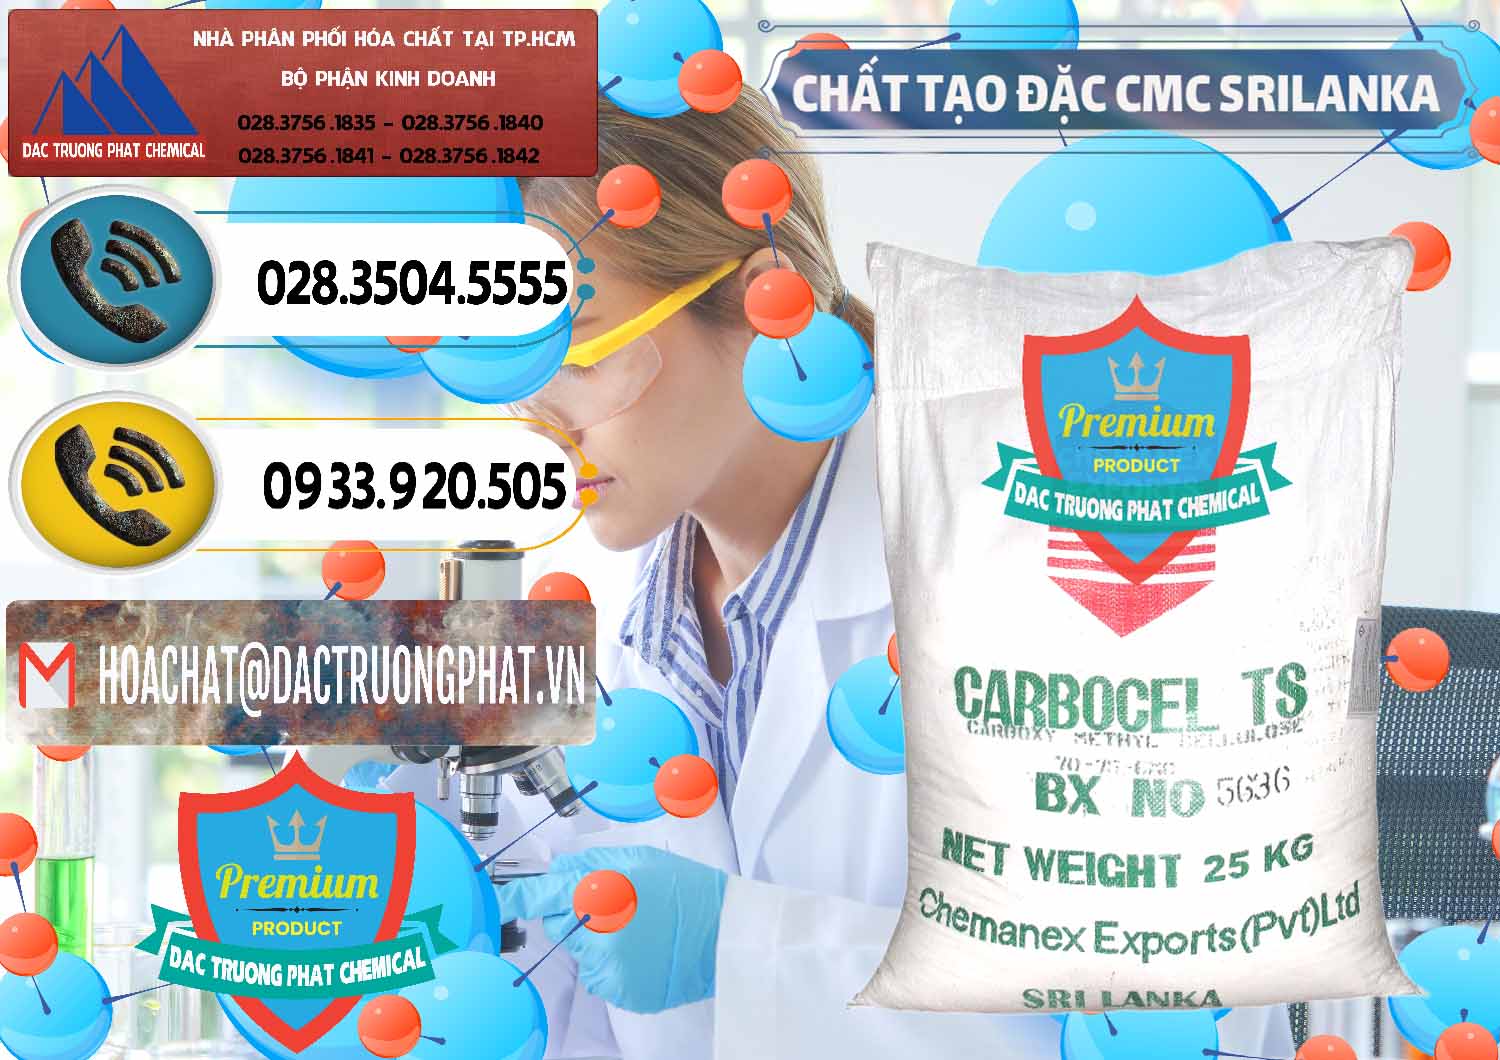 Cty phân phối _ bán Chất Tạo Đặc CMC - Carboxyl Methyl Cellulose Srilanka - 0045 - Chuyên cung cấp _ kinh doanh hóa chất tại TP.HCM - hoachatdetnhuom.vn